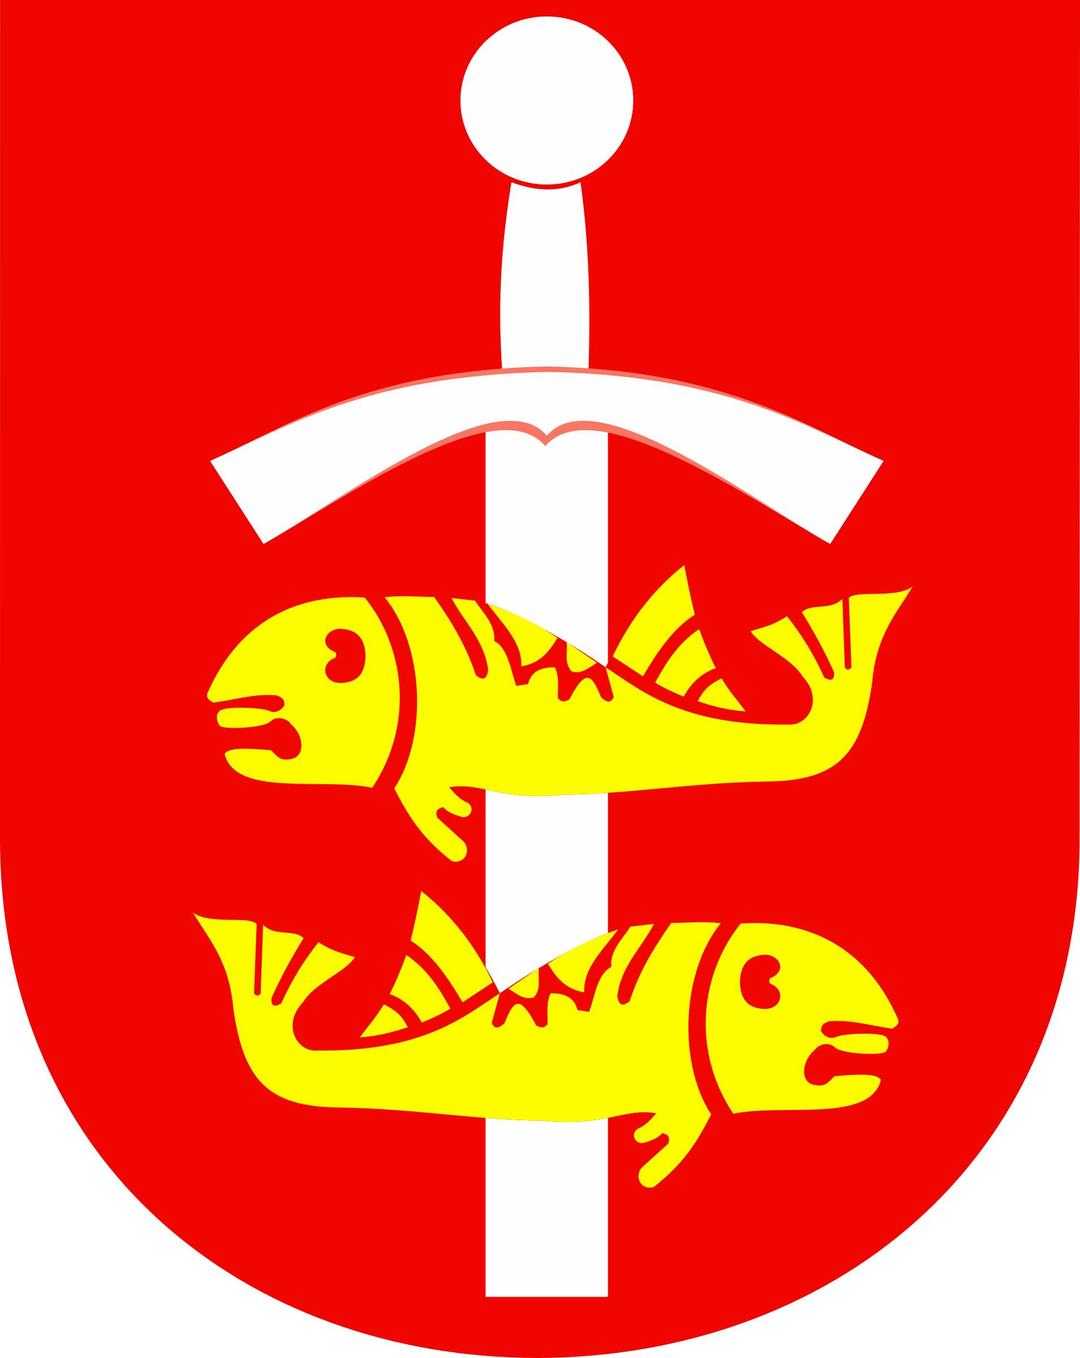 Gdynia - coat of arms png transparent